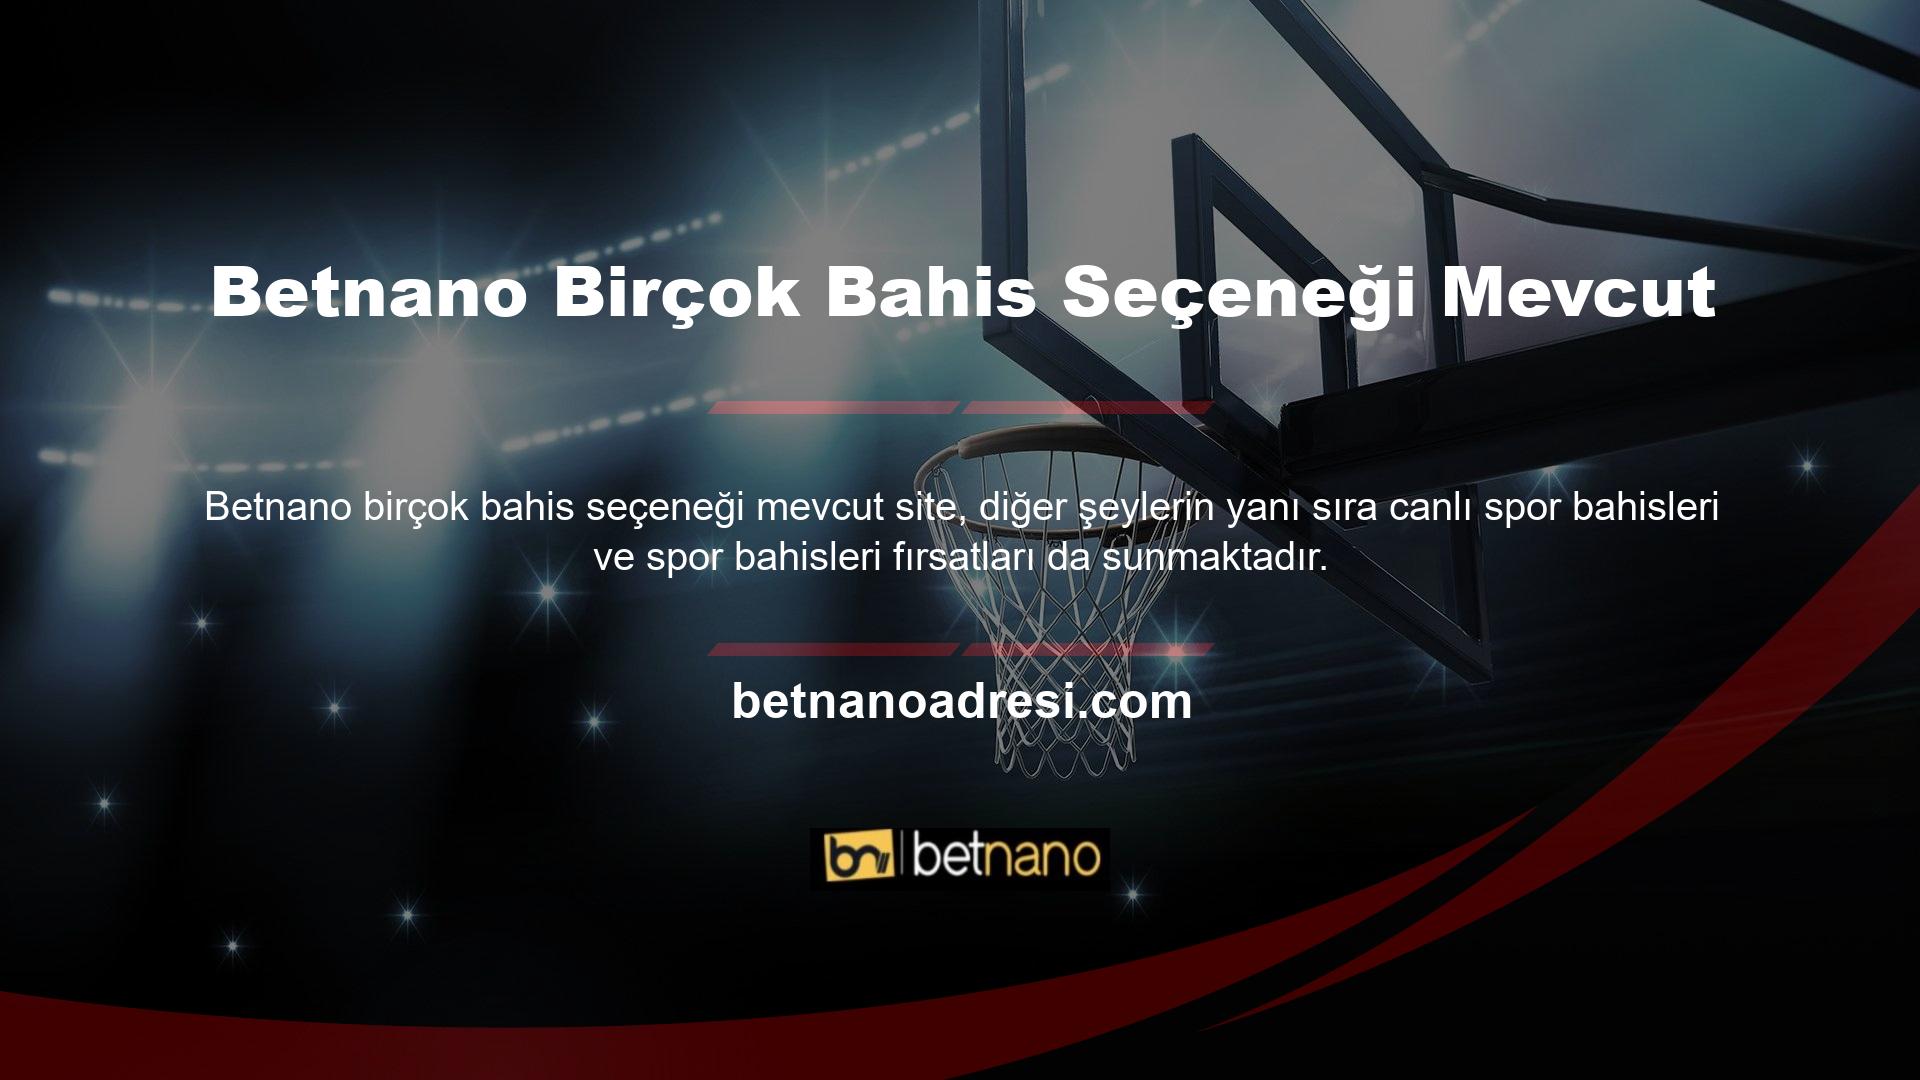 Betnano web sitesi yeni bahis seçenekleriyle sürekli olarak güncellenmektedir